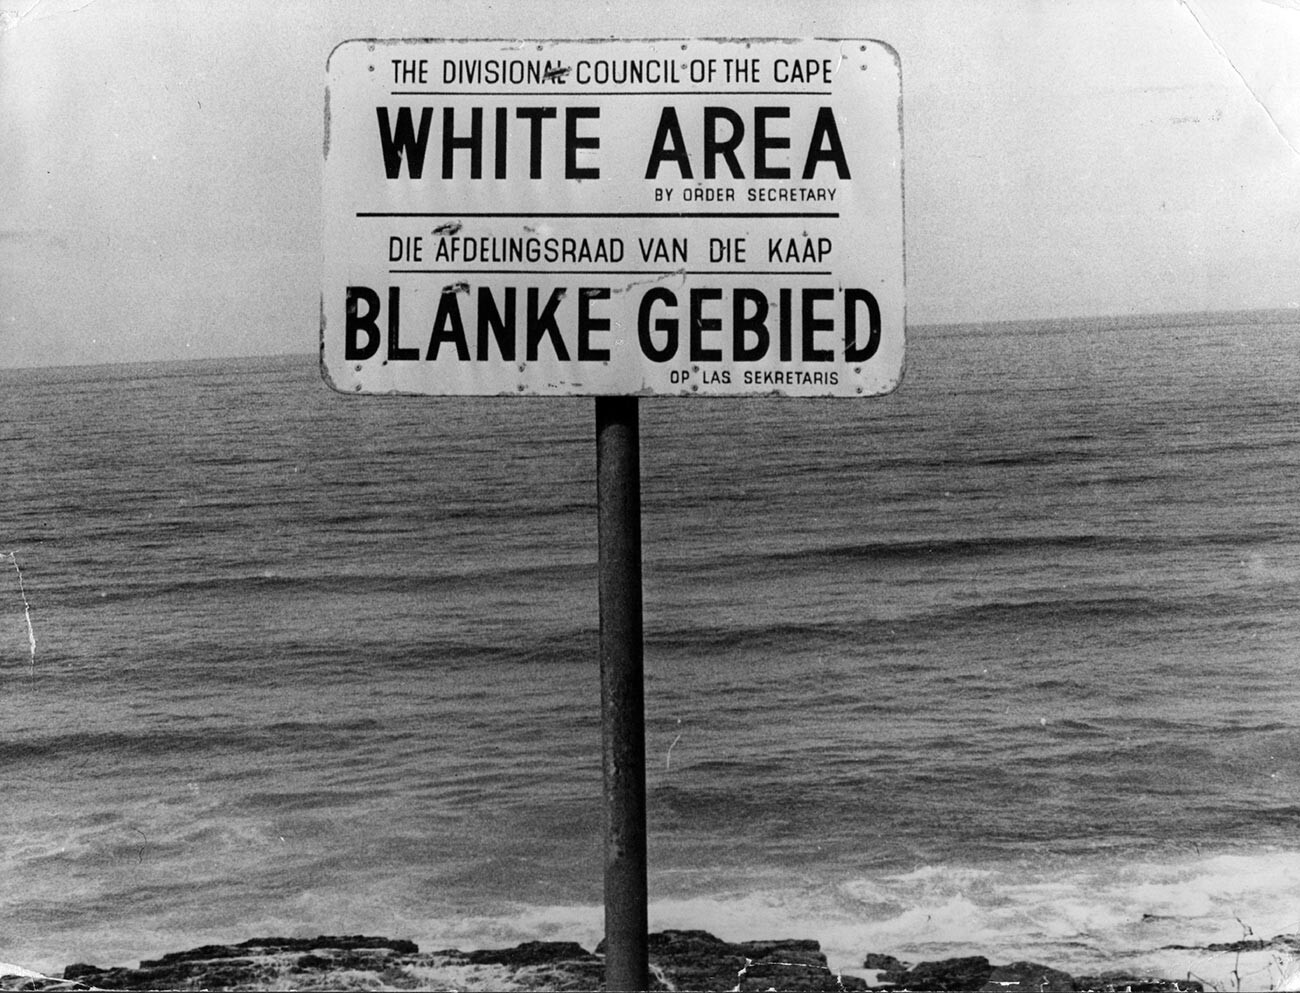 Ein Apartheid-Hinweis an einem Strand in der Nähe von Kapstadt, der das Gebiet nur für Weiße kennzeichnet.